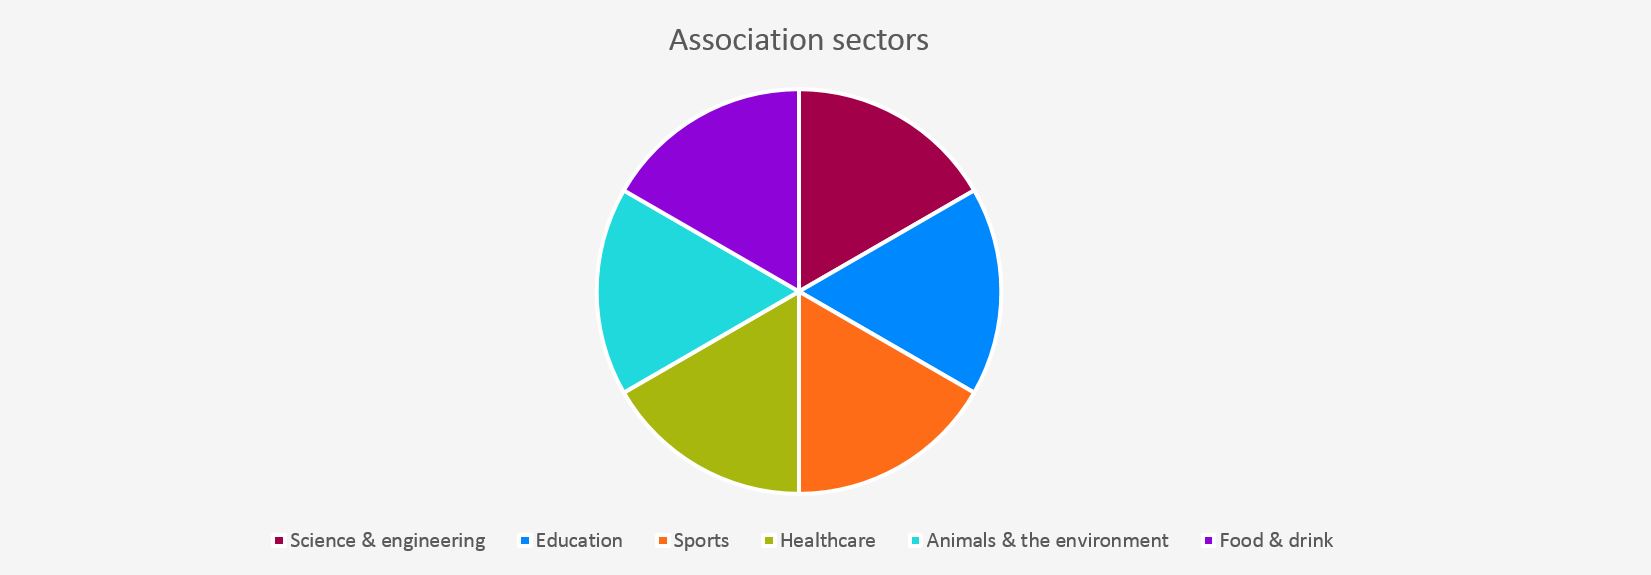 188 Association sectors